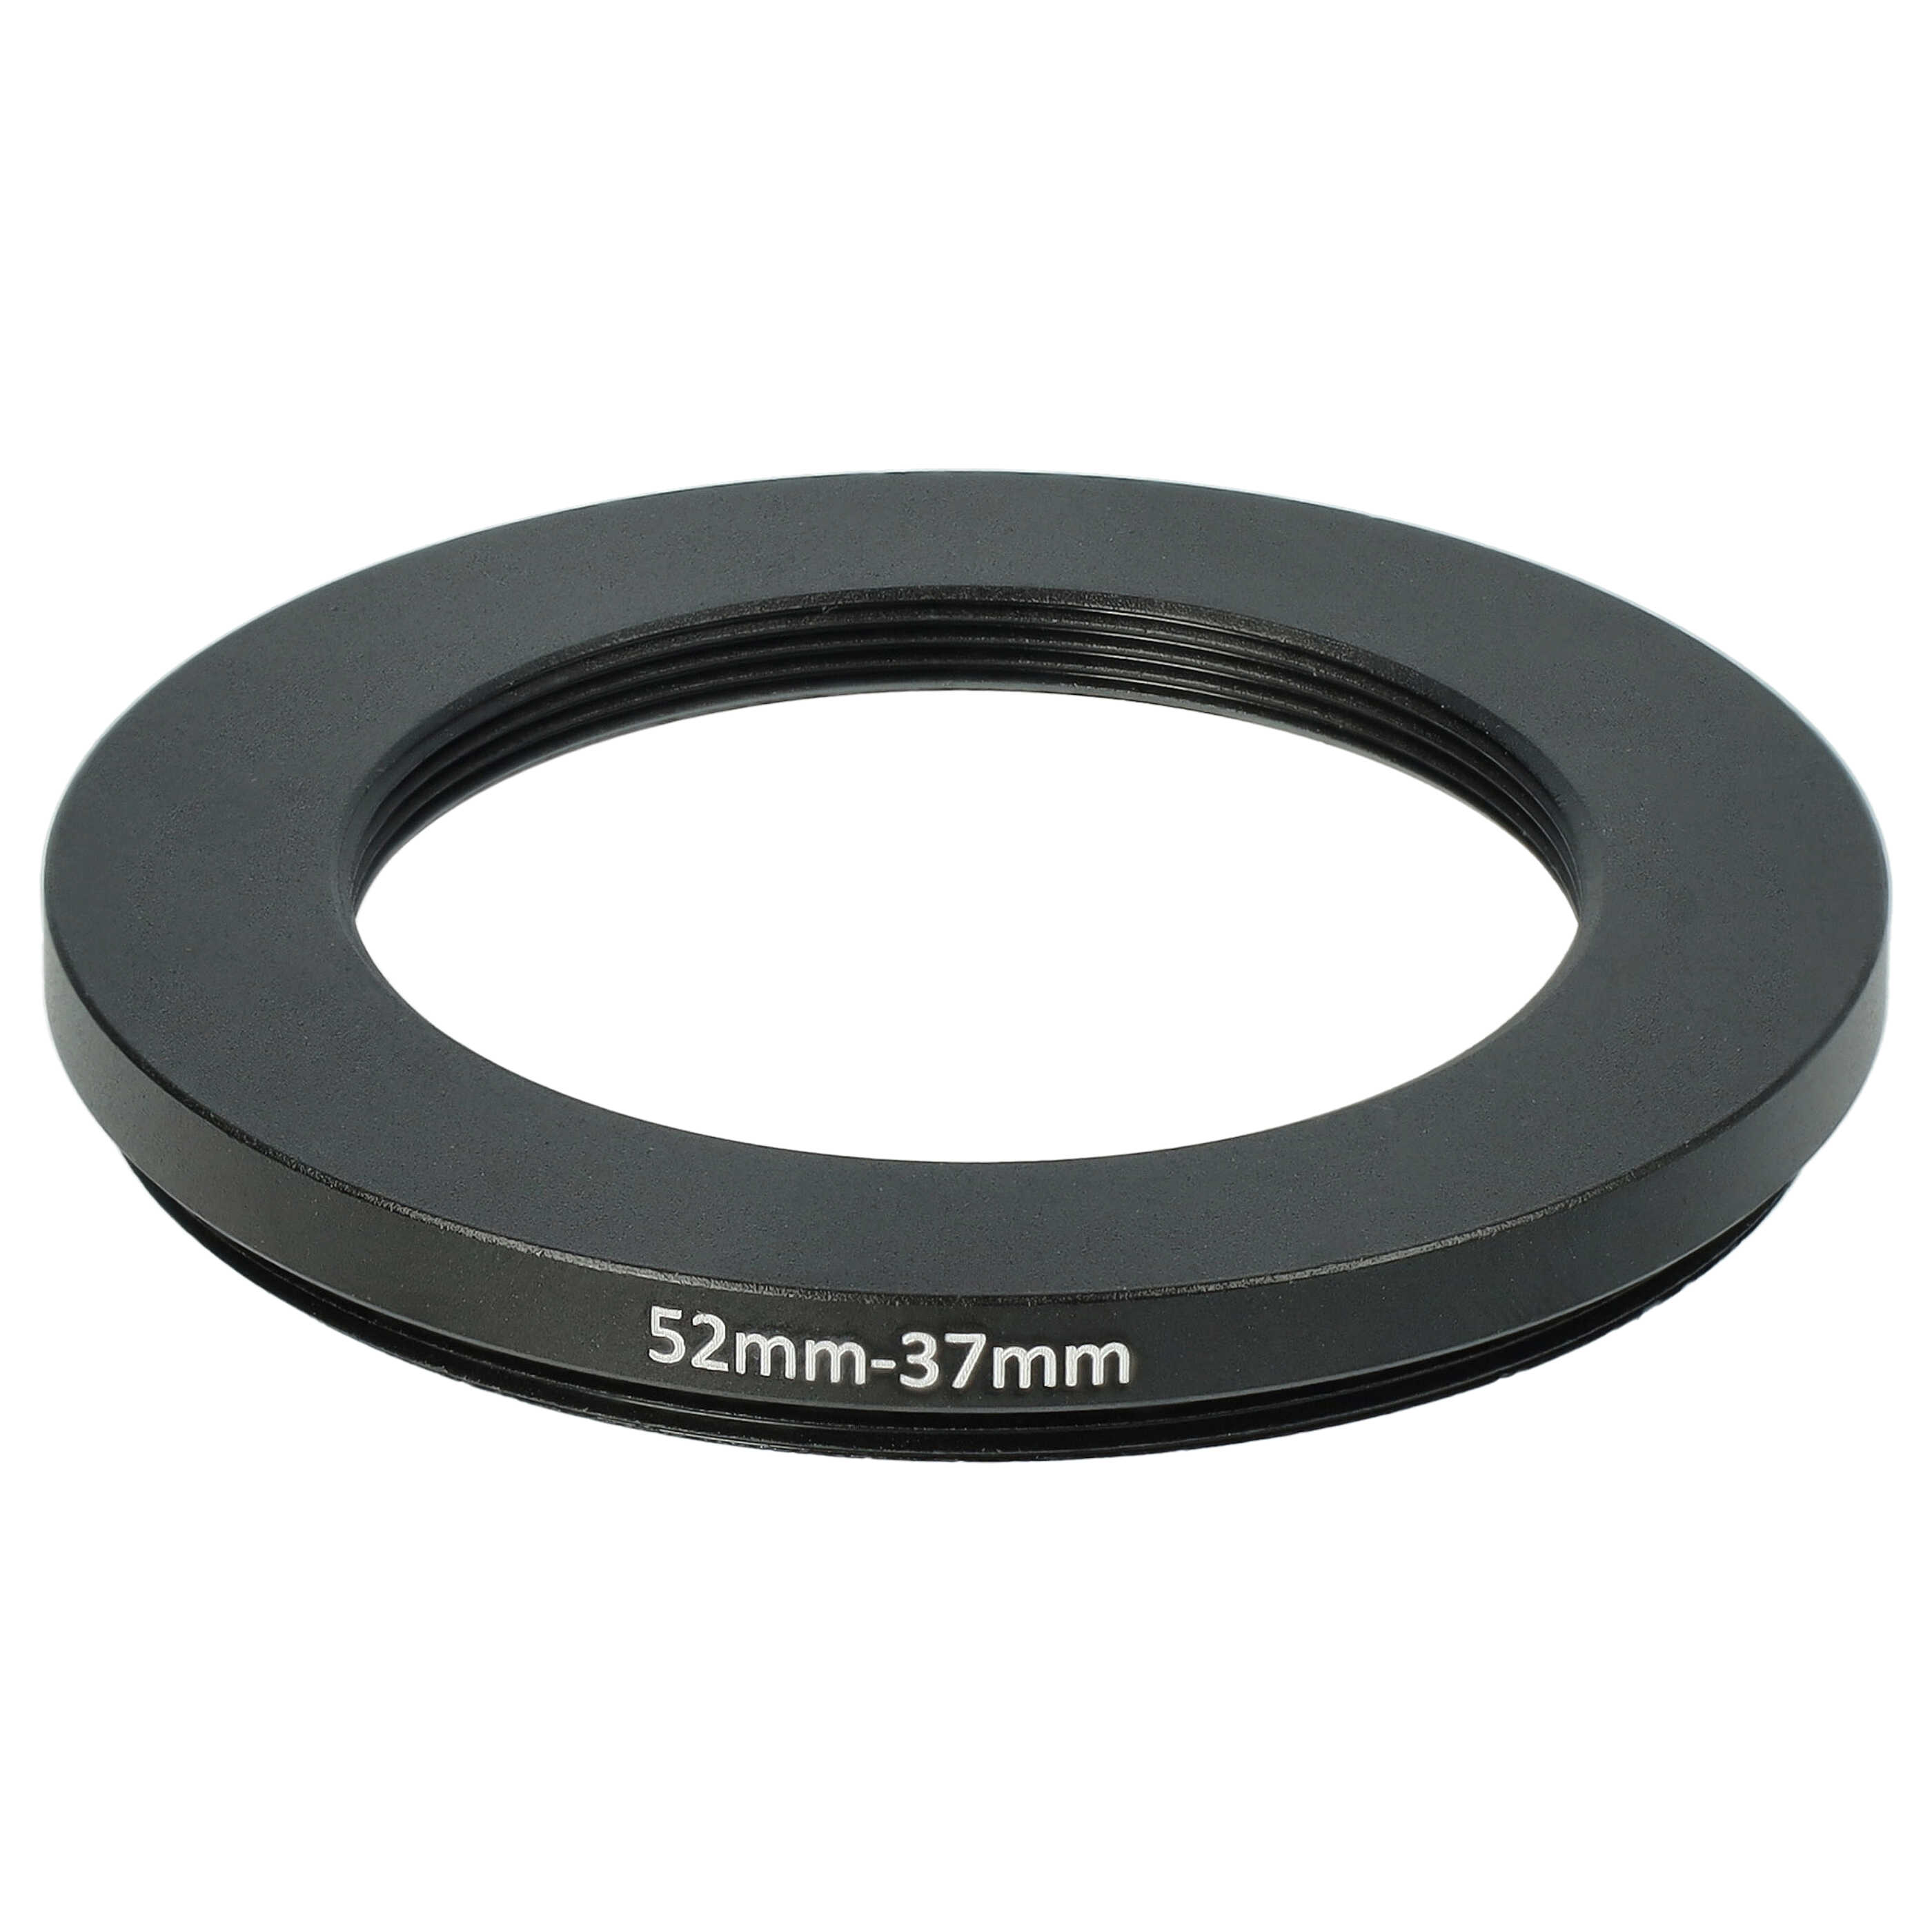 Anillo adaptador Step Down de 52 mm a 37 mm para objetivo de la cámara - Adaptador de filtro, metal, negro